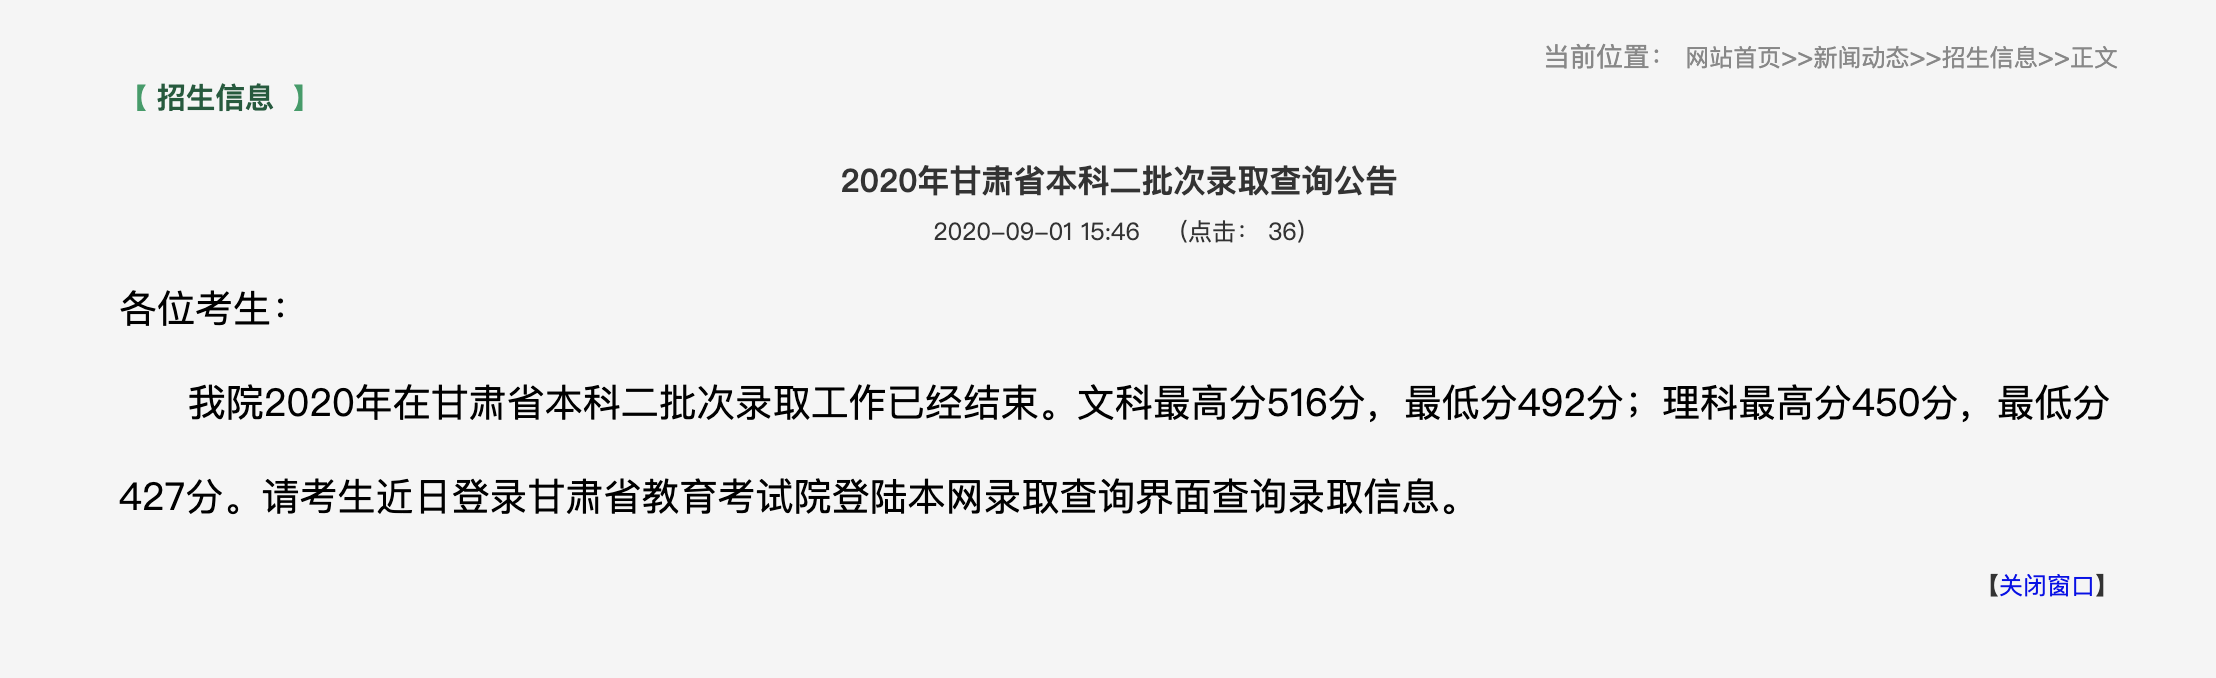 哈尔滨金融学院2020年甘肃省本科二批次录取查询公告